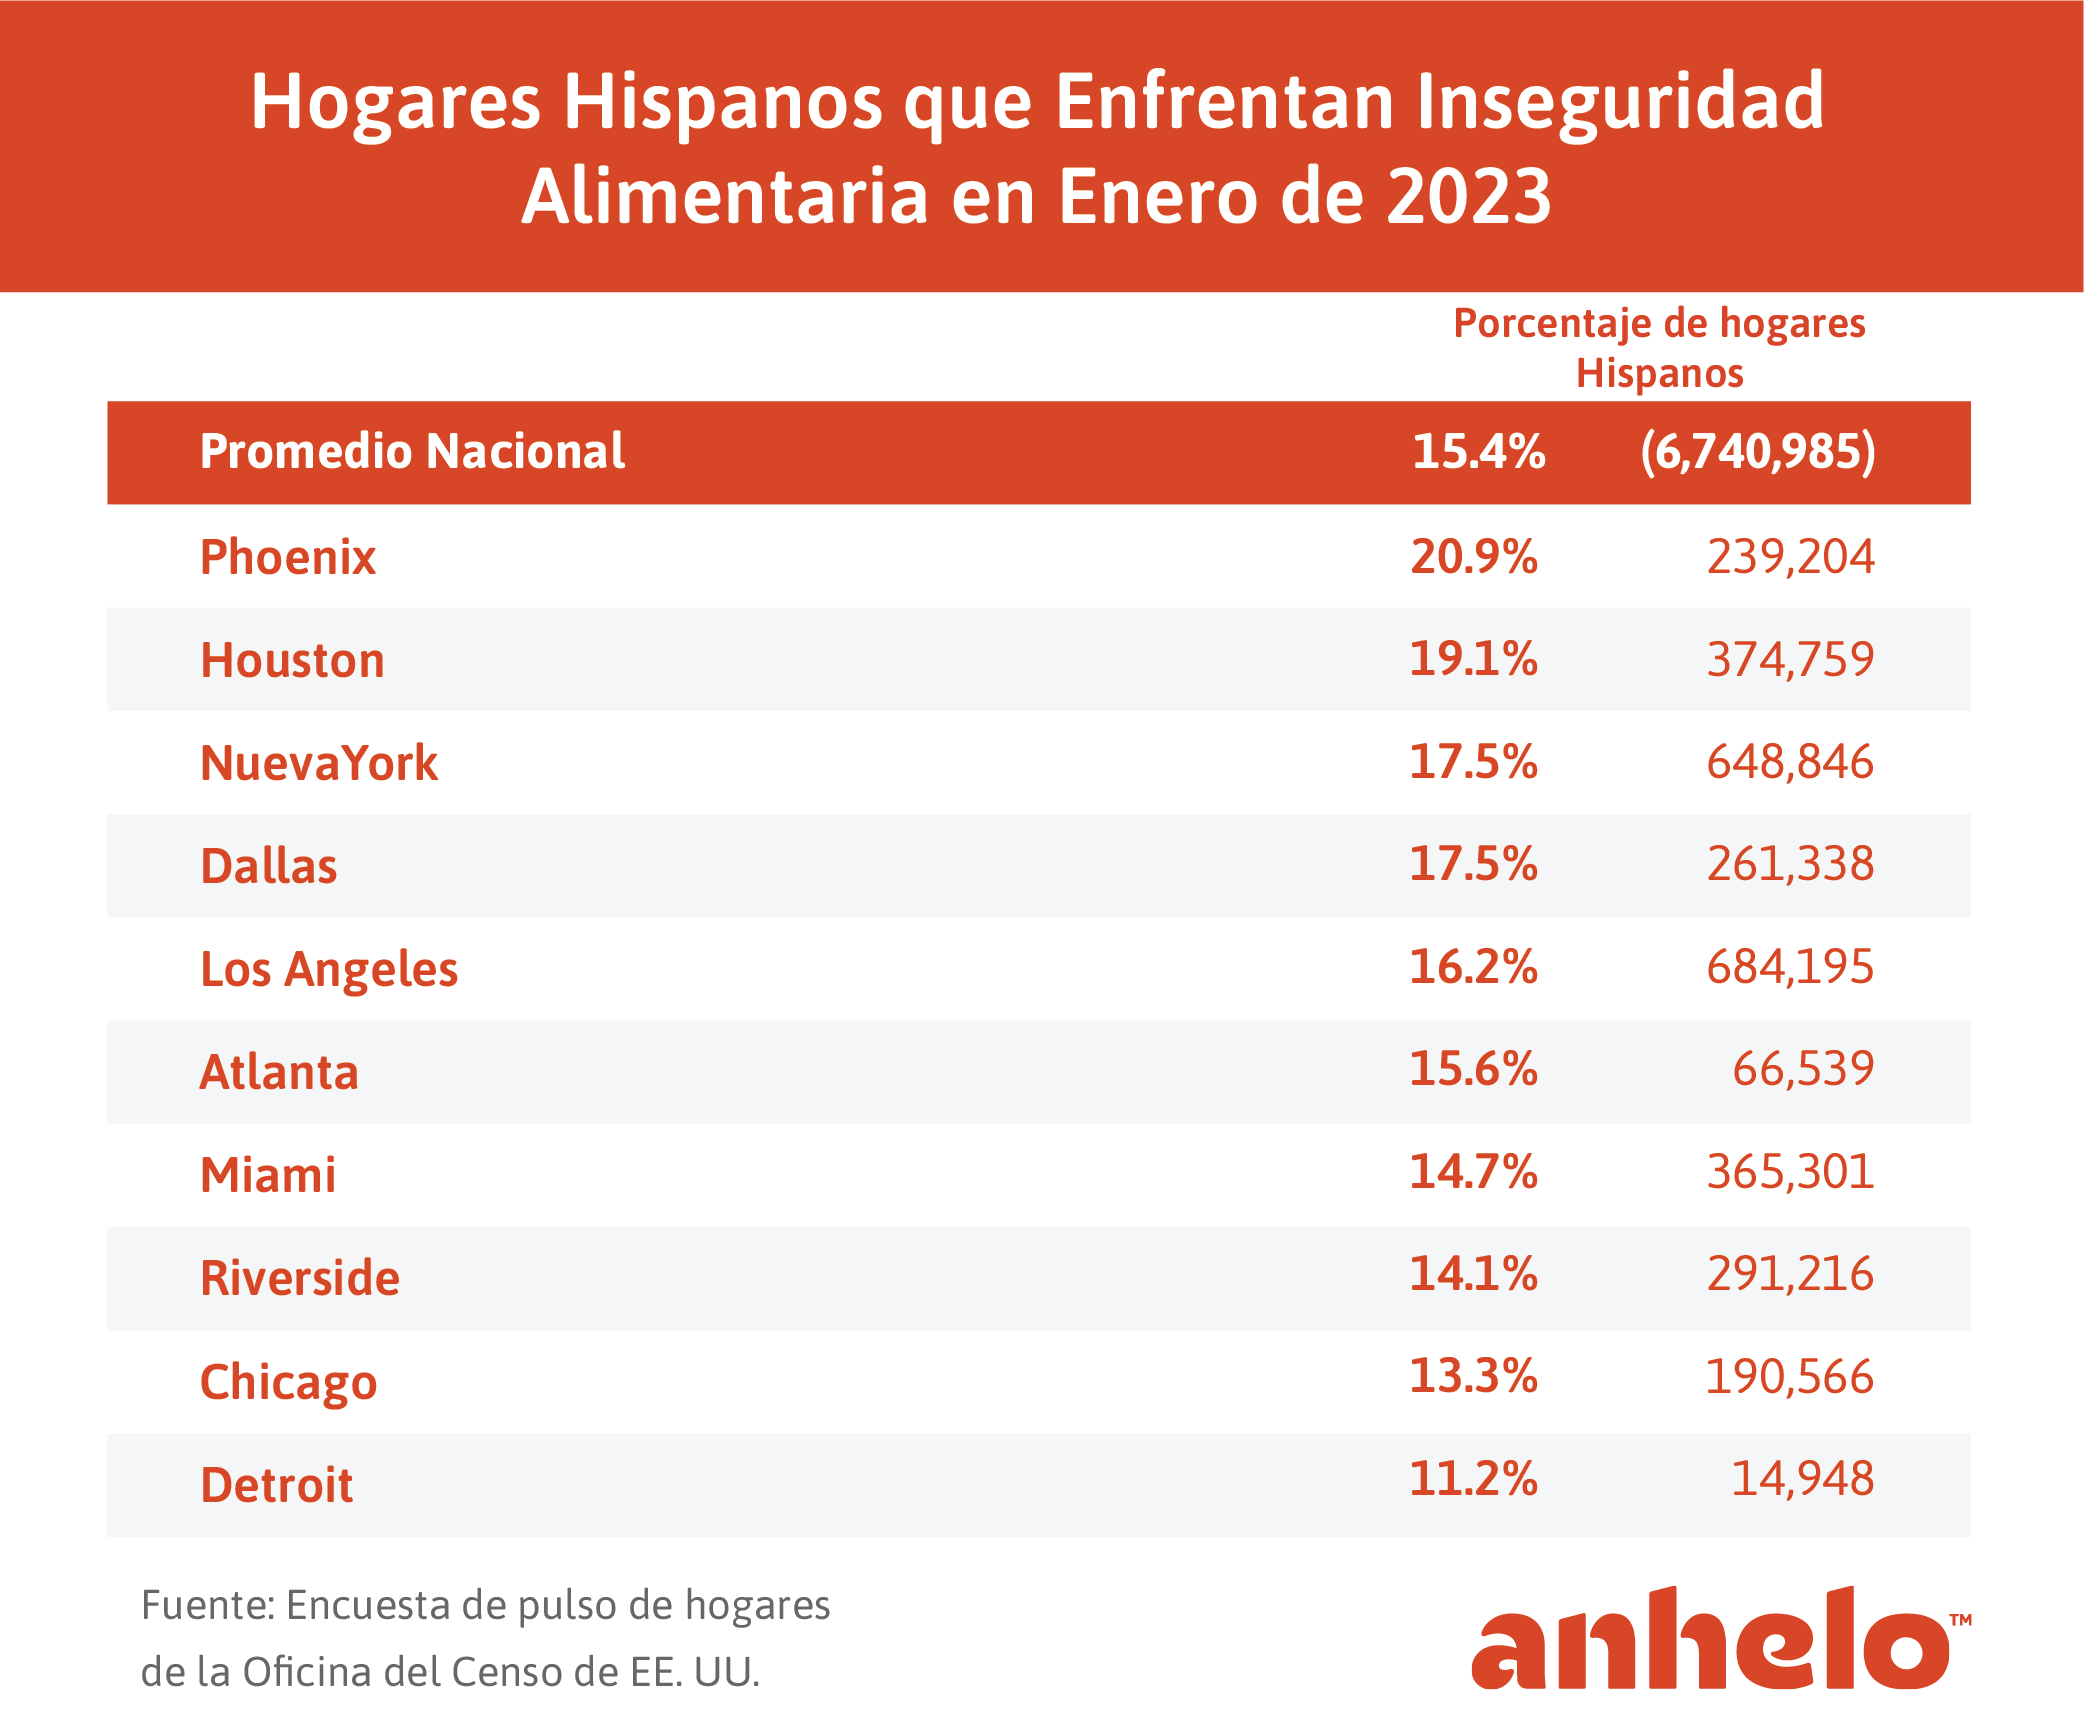 Hogares Hispanos con Inseguridad Alimentaria por ciudad